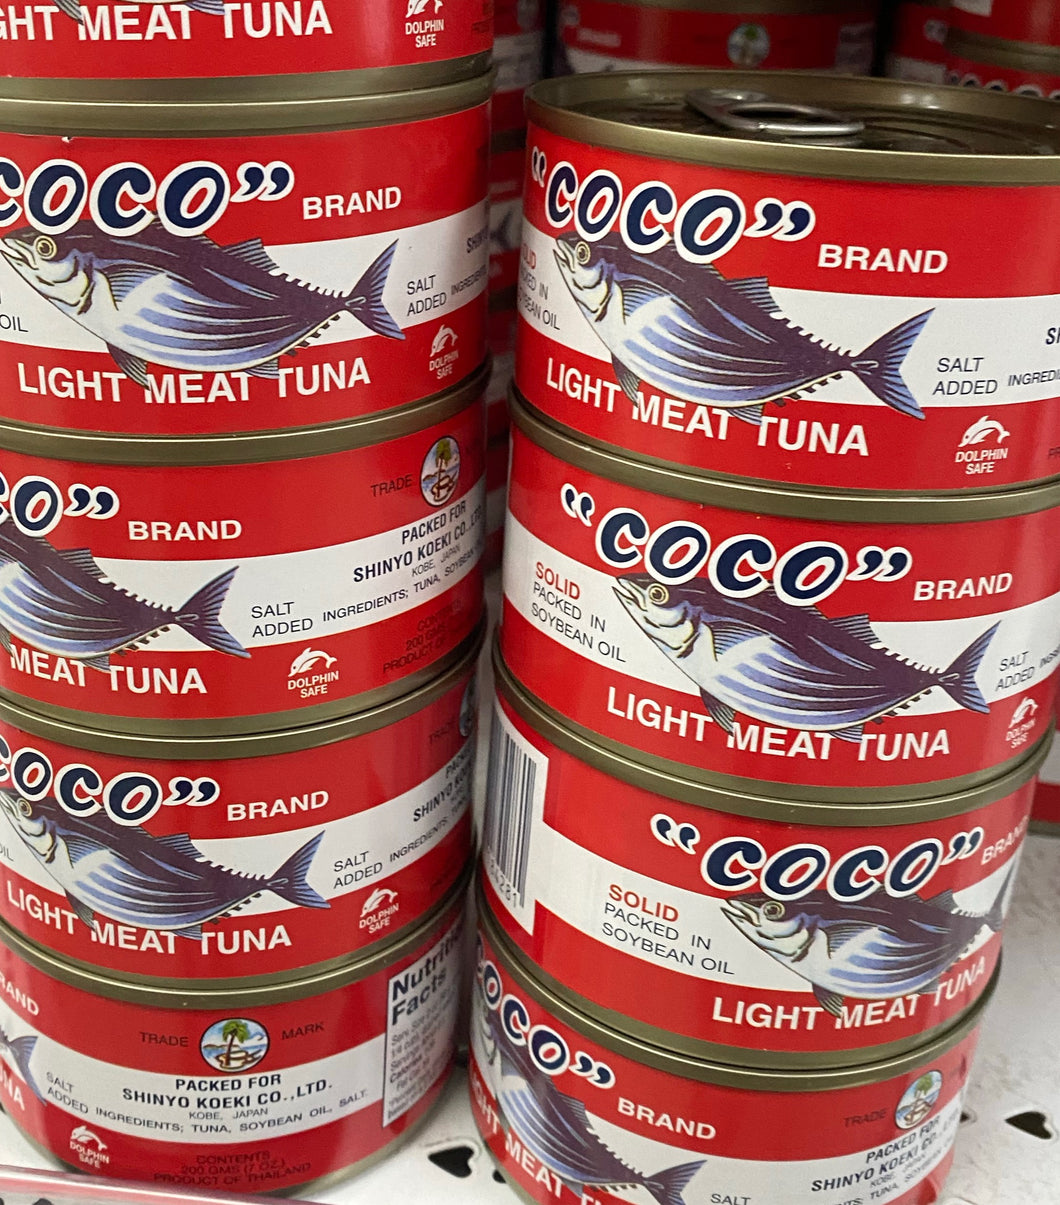 Tuna (Coco)